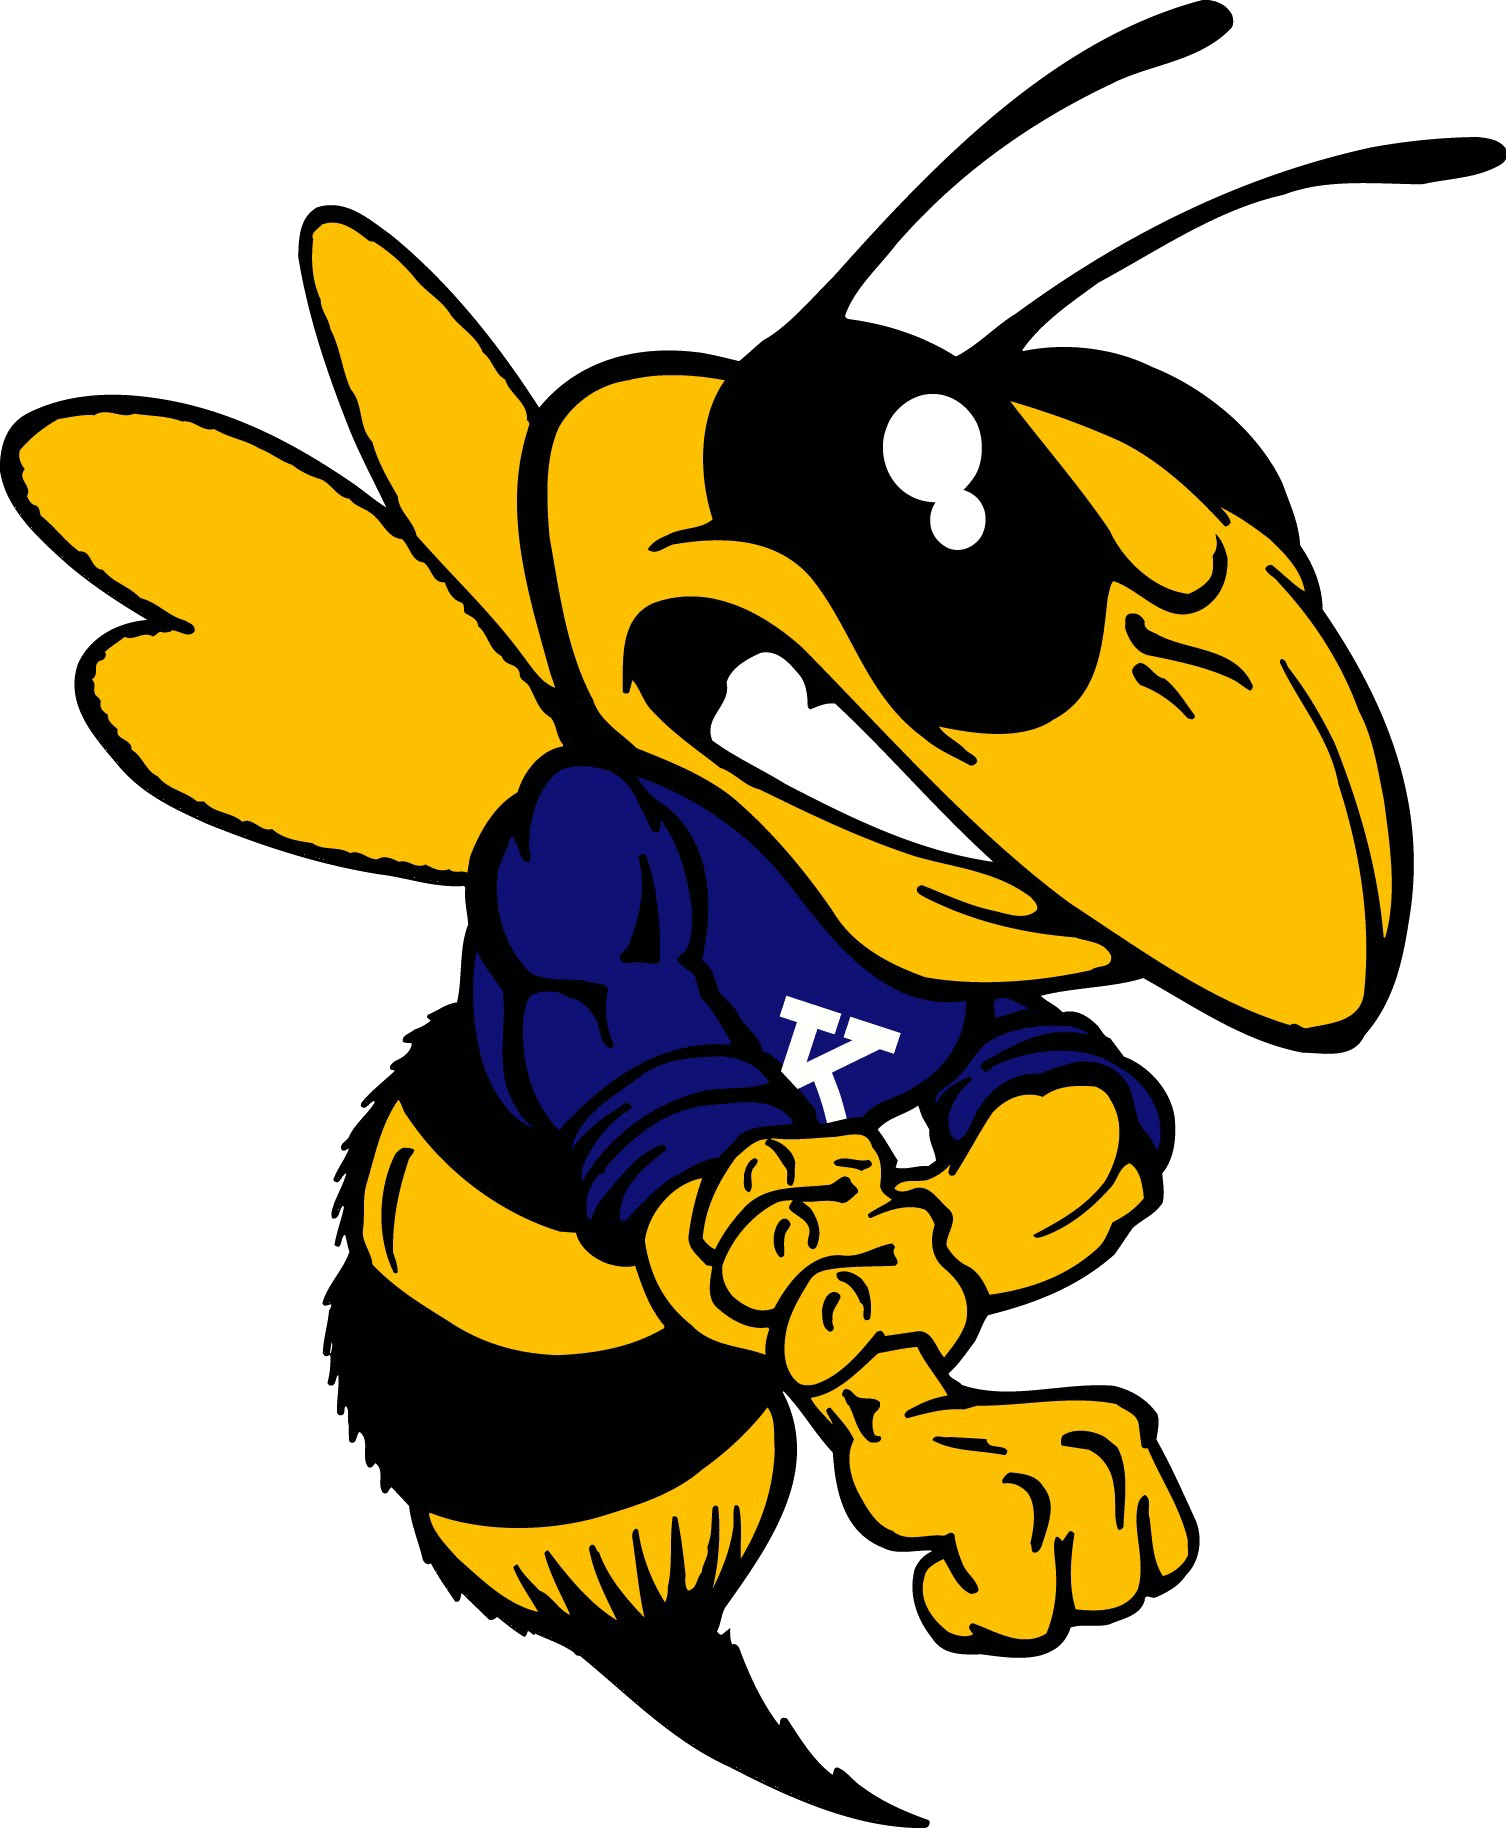 Hornets Football Logo - Kirtland Football Moms. Shop For Your Favorite Hornets Gear